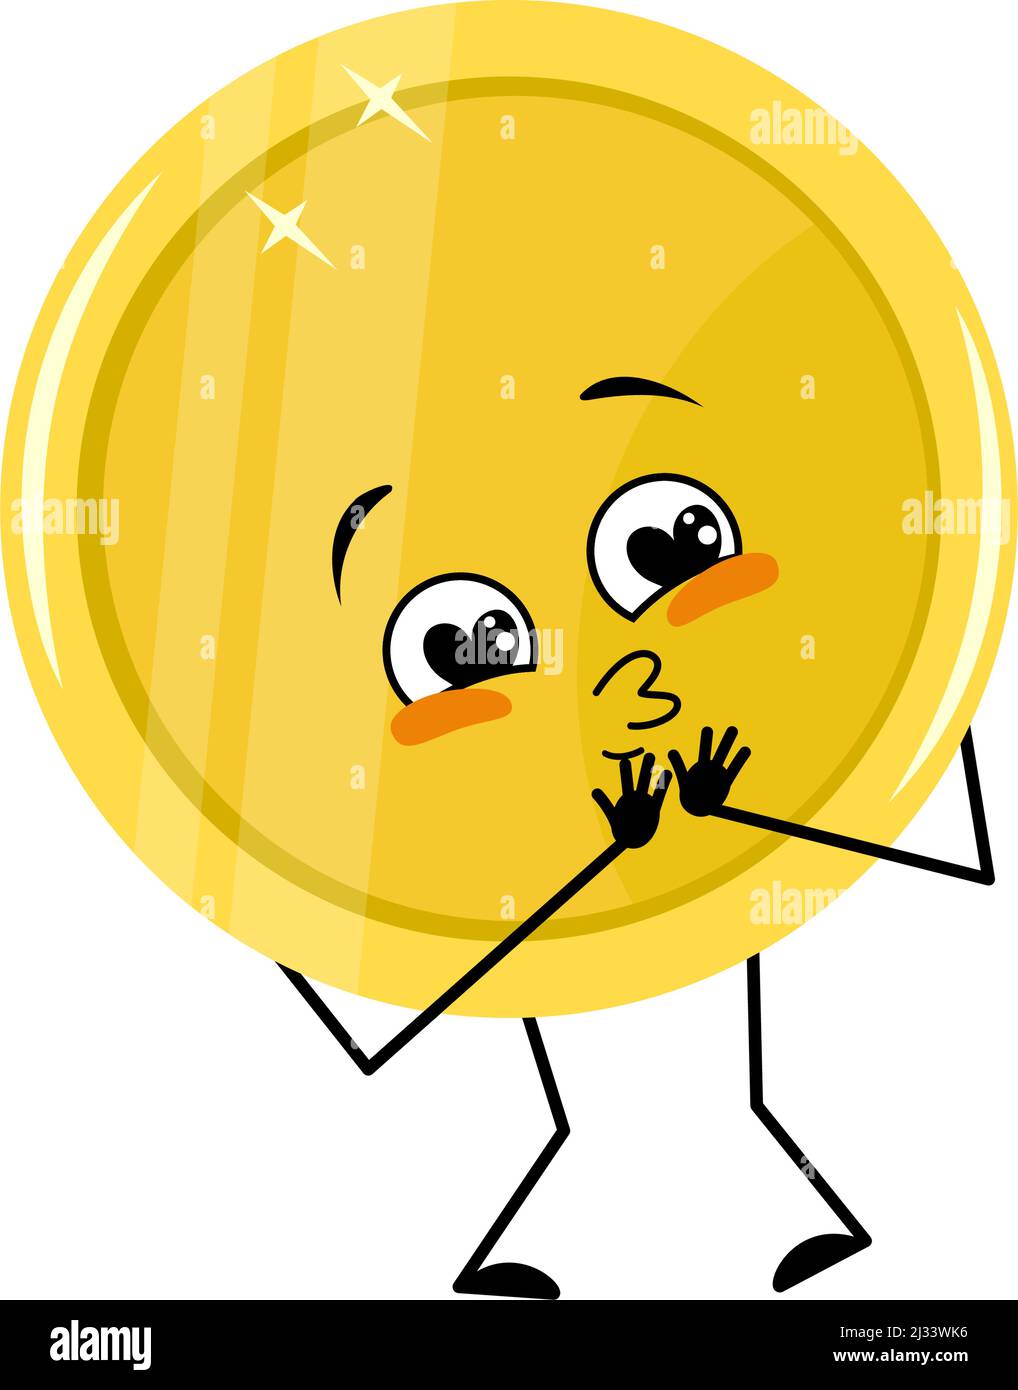 Niedliche goldene Münze Charakter mit Liebe Emotionen, glückliches Gesicht, Lächeln, Arme und Beine. Geldmensch mit witzigem Ausdruck und Pose. Vektorgrafik flach Stock Vektor